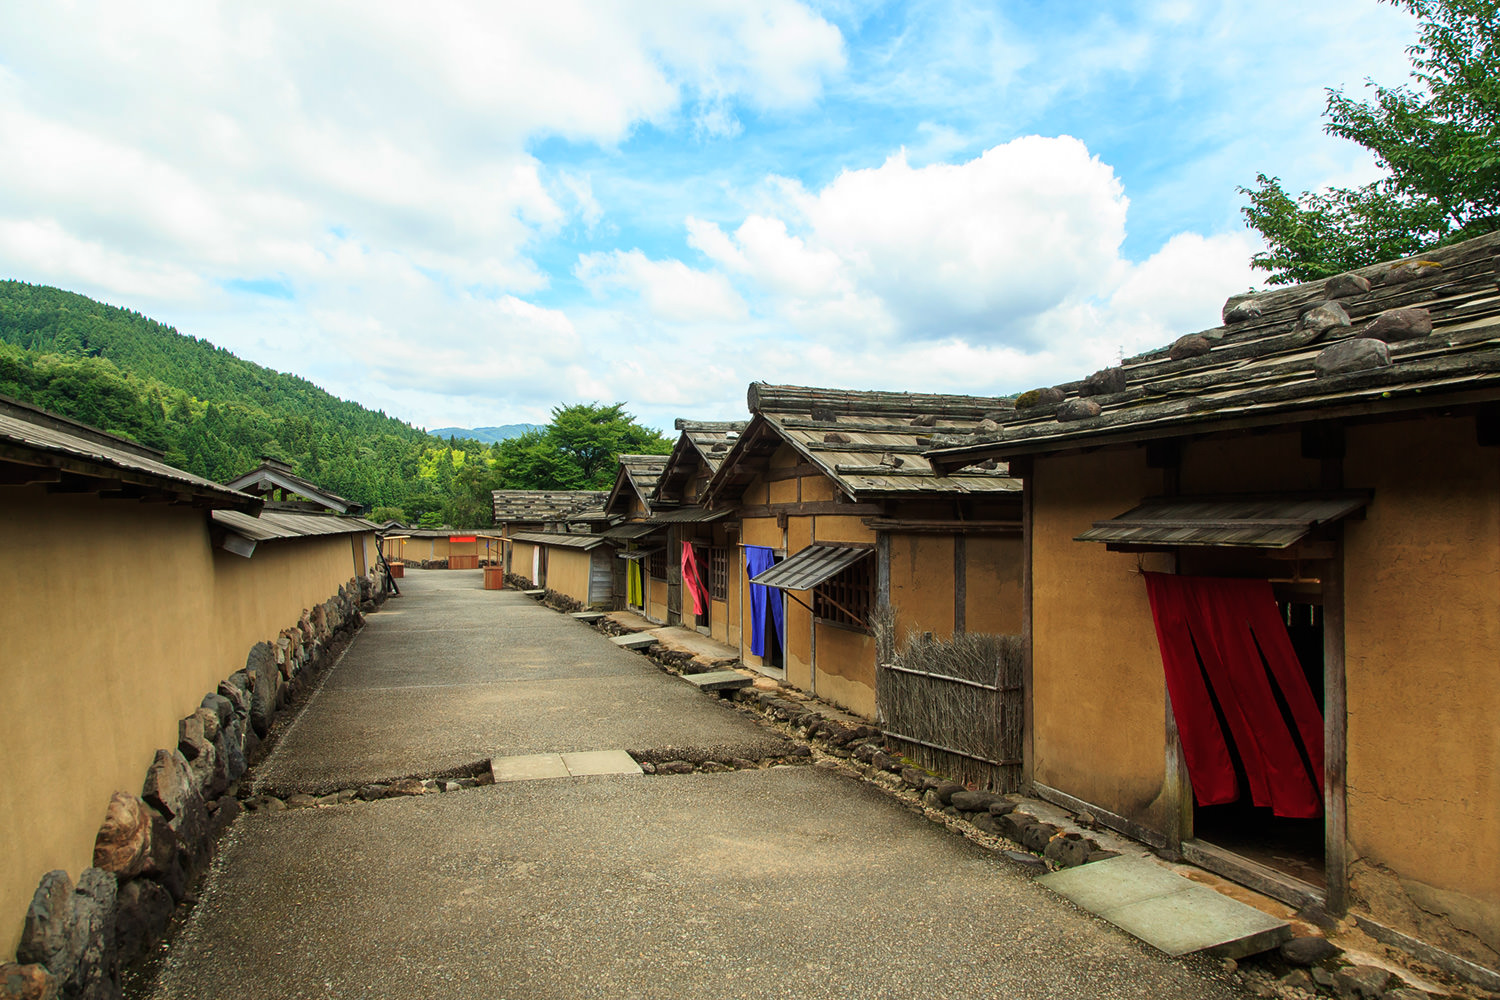 Ichijodani Asakura Clan Historic Ruins